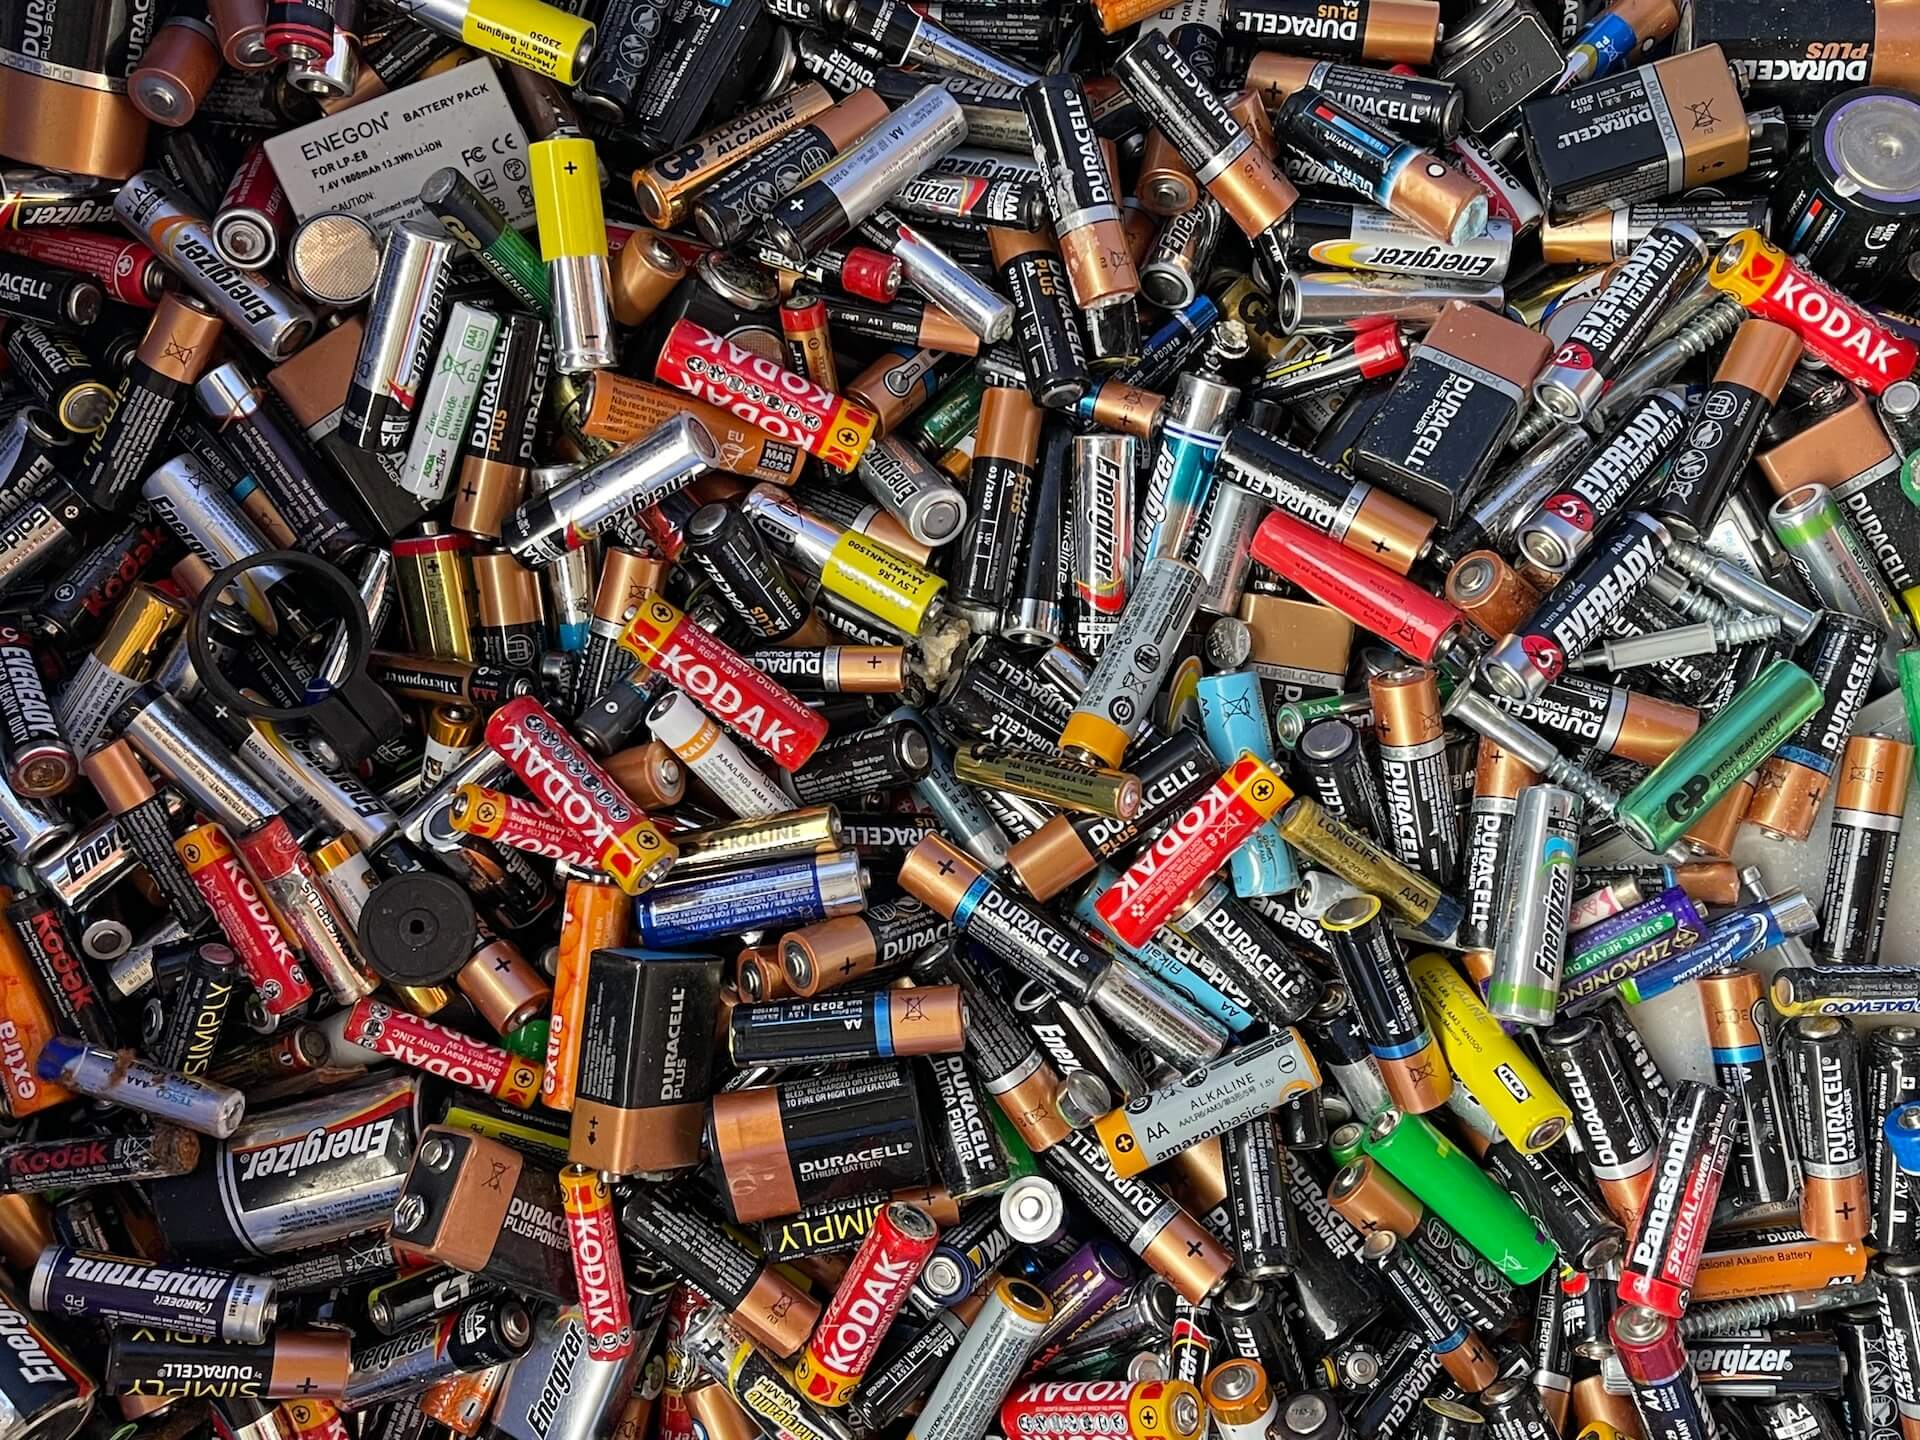 hundreds of household batteries